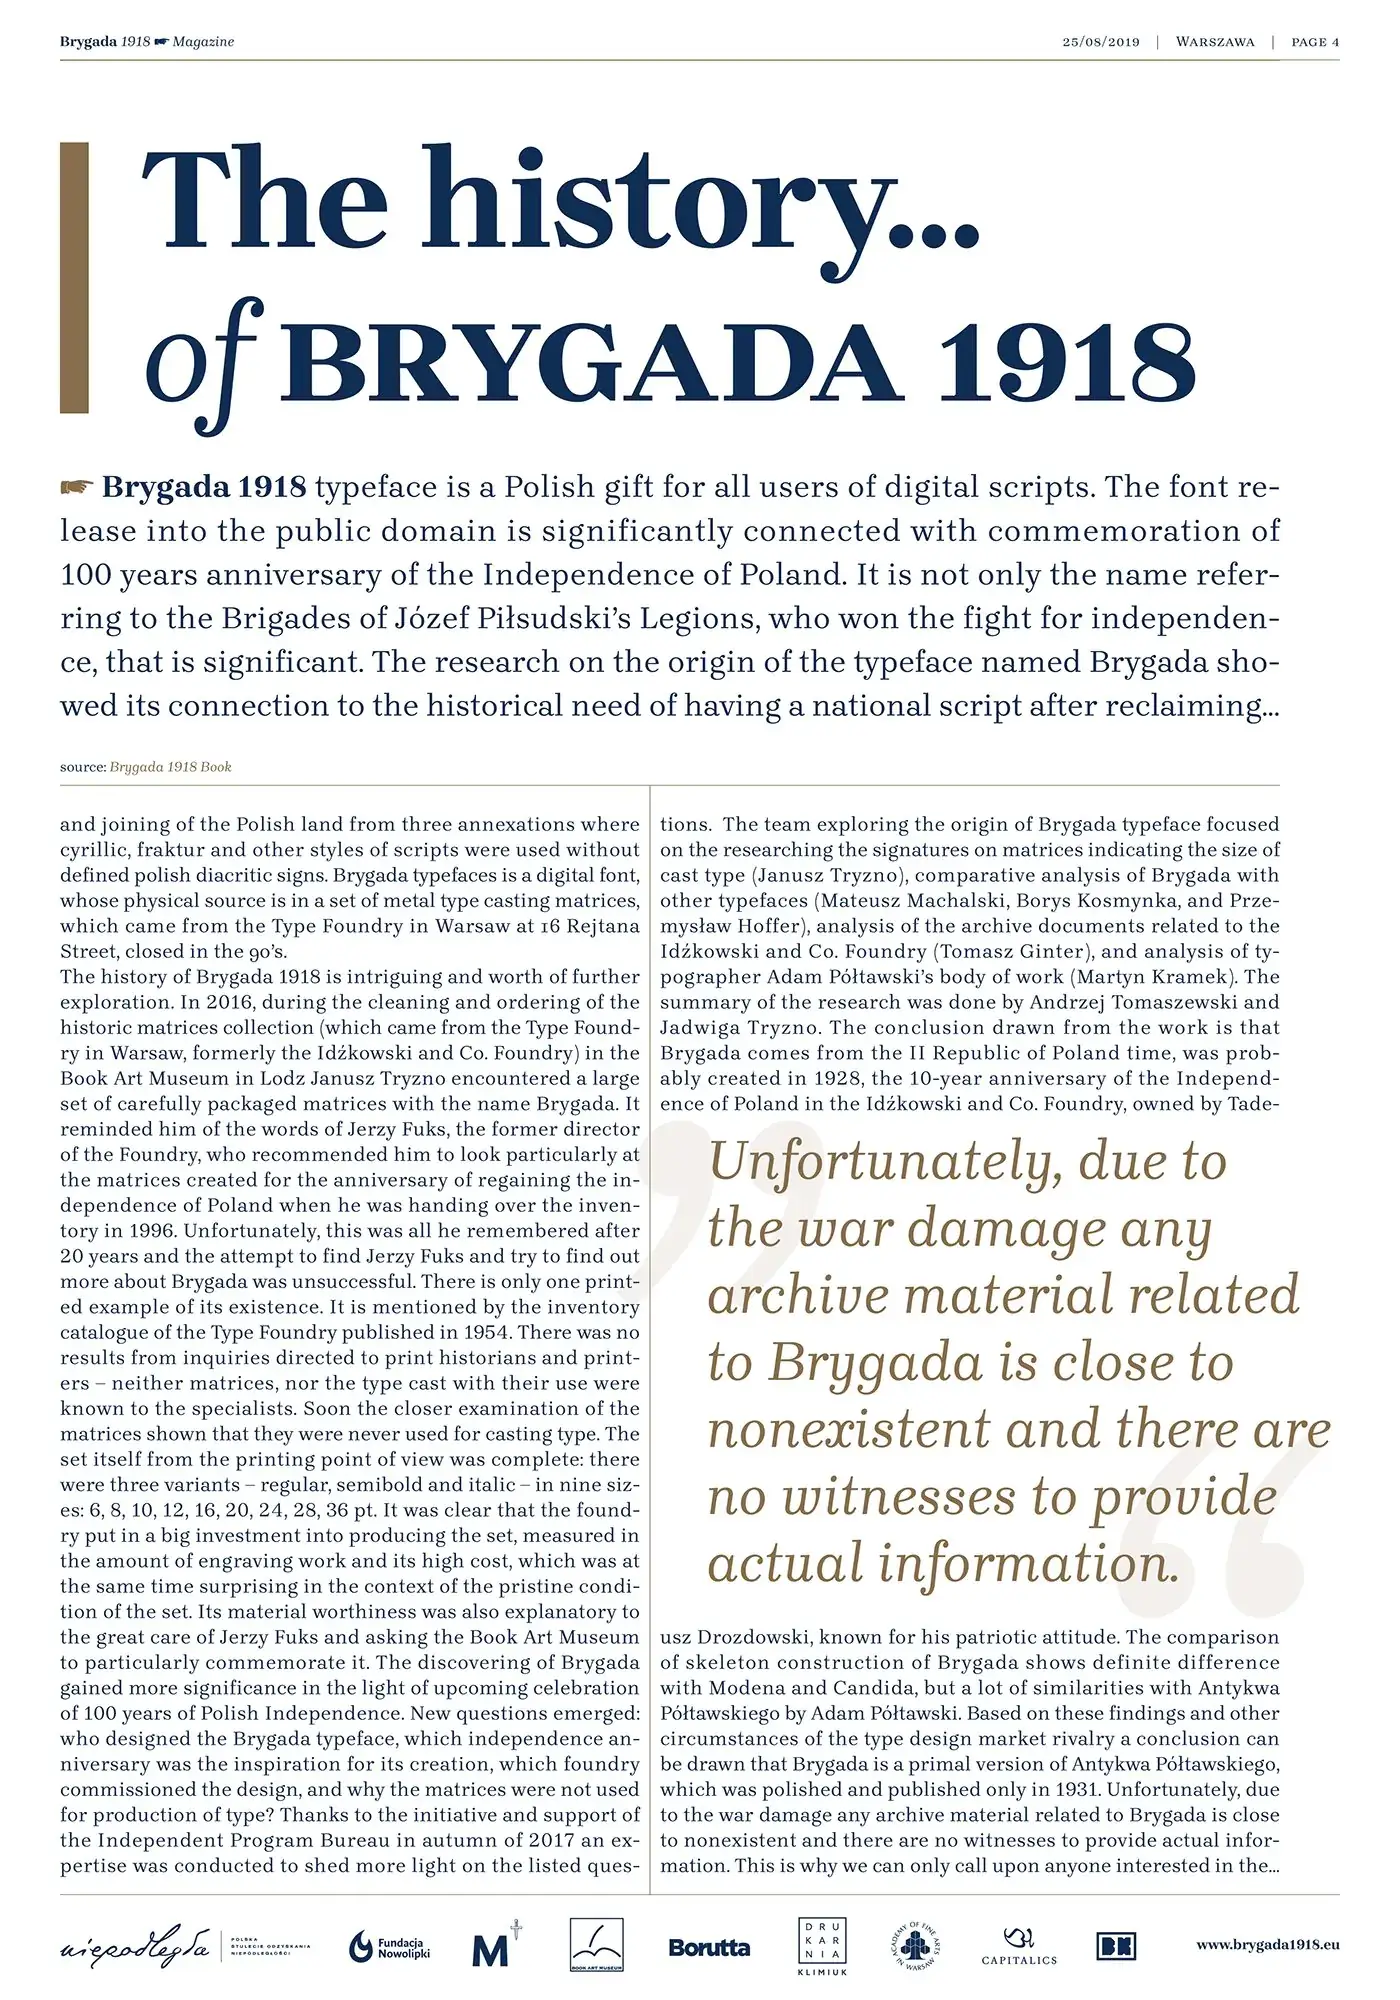 Шрифт Brygada 1918 Cyrillic